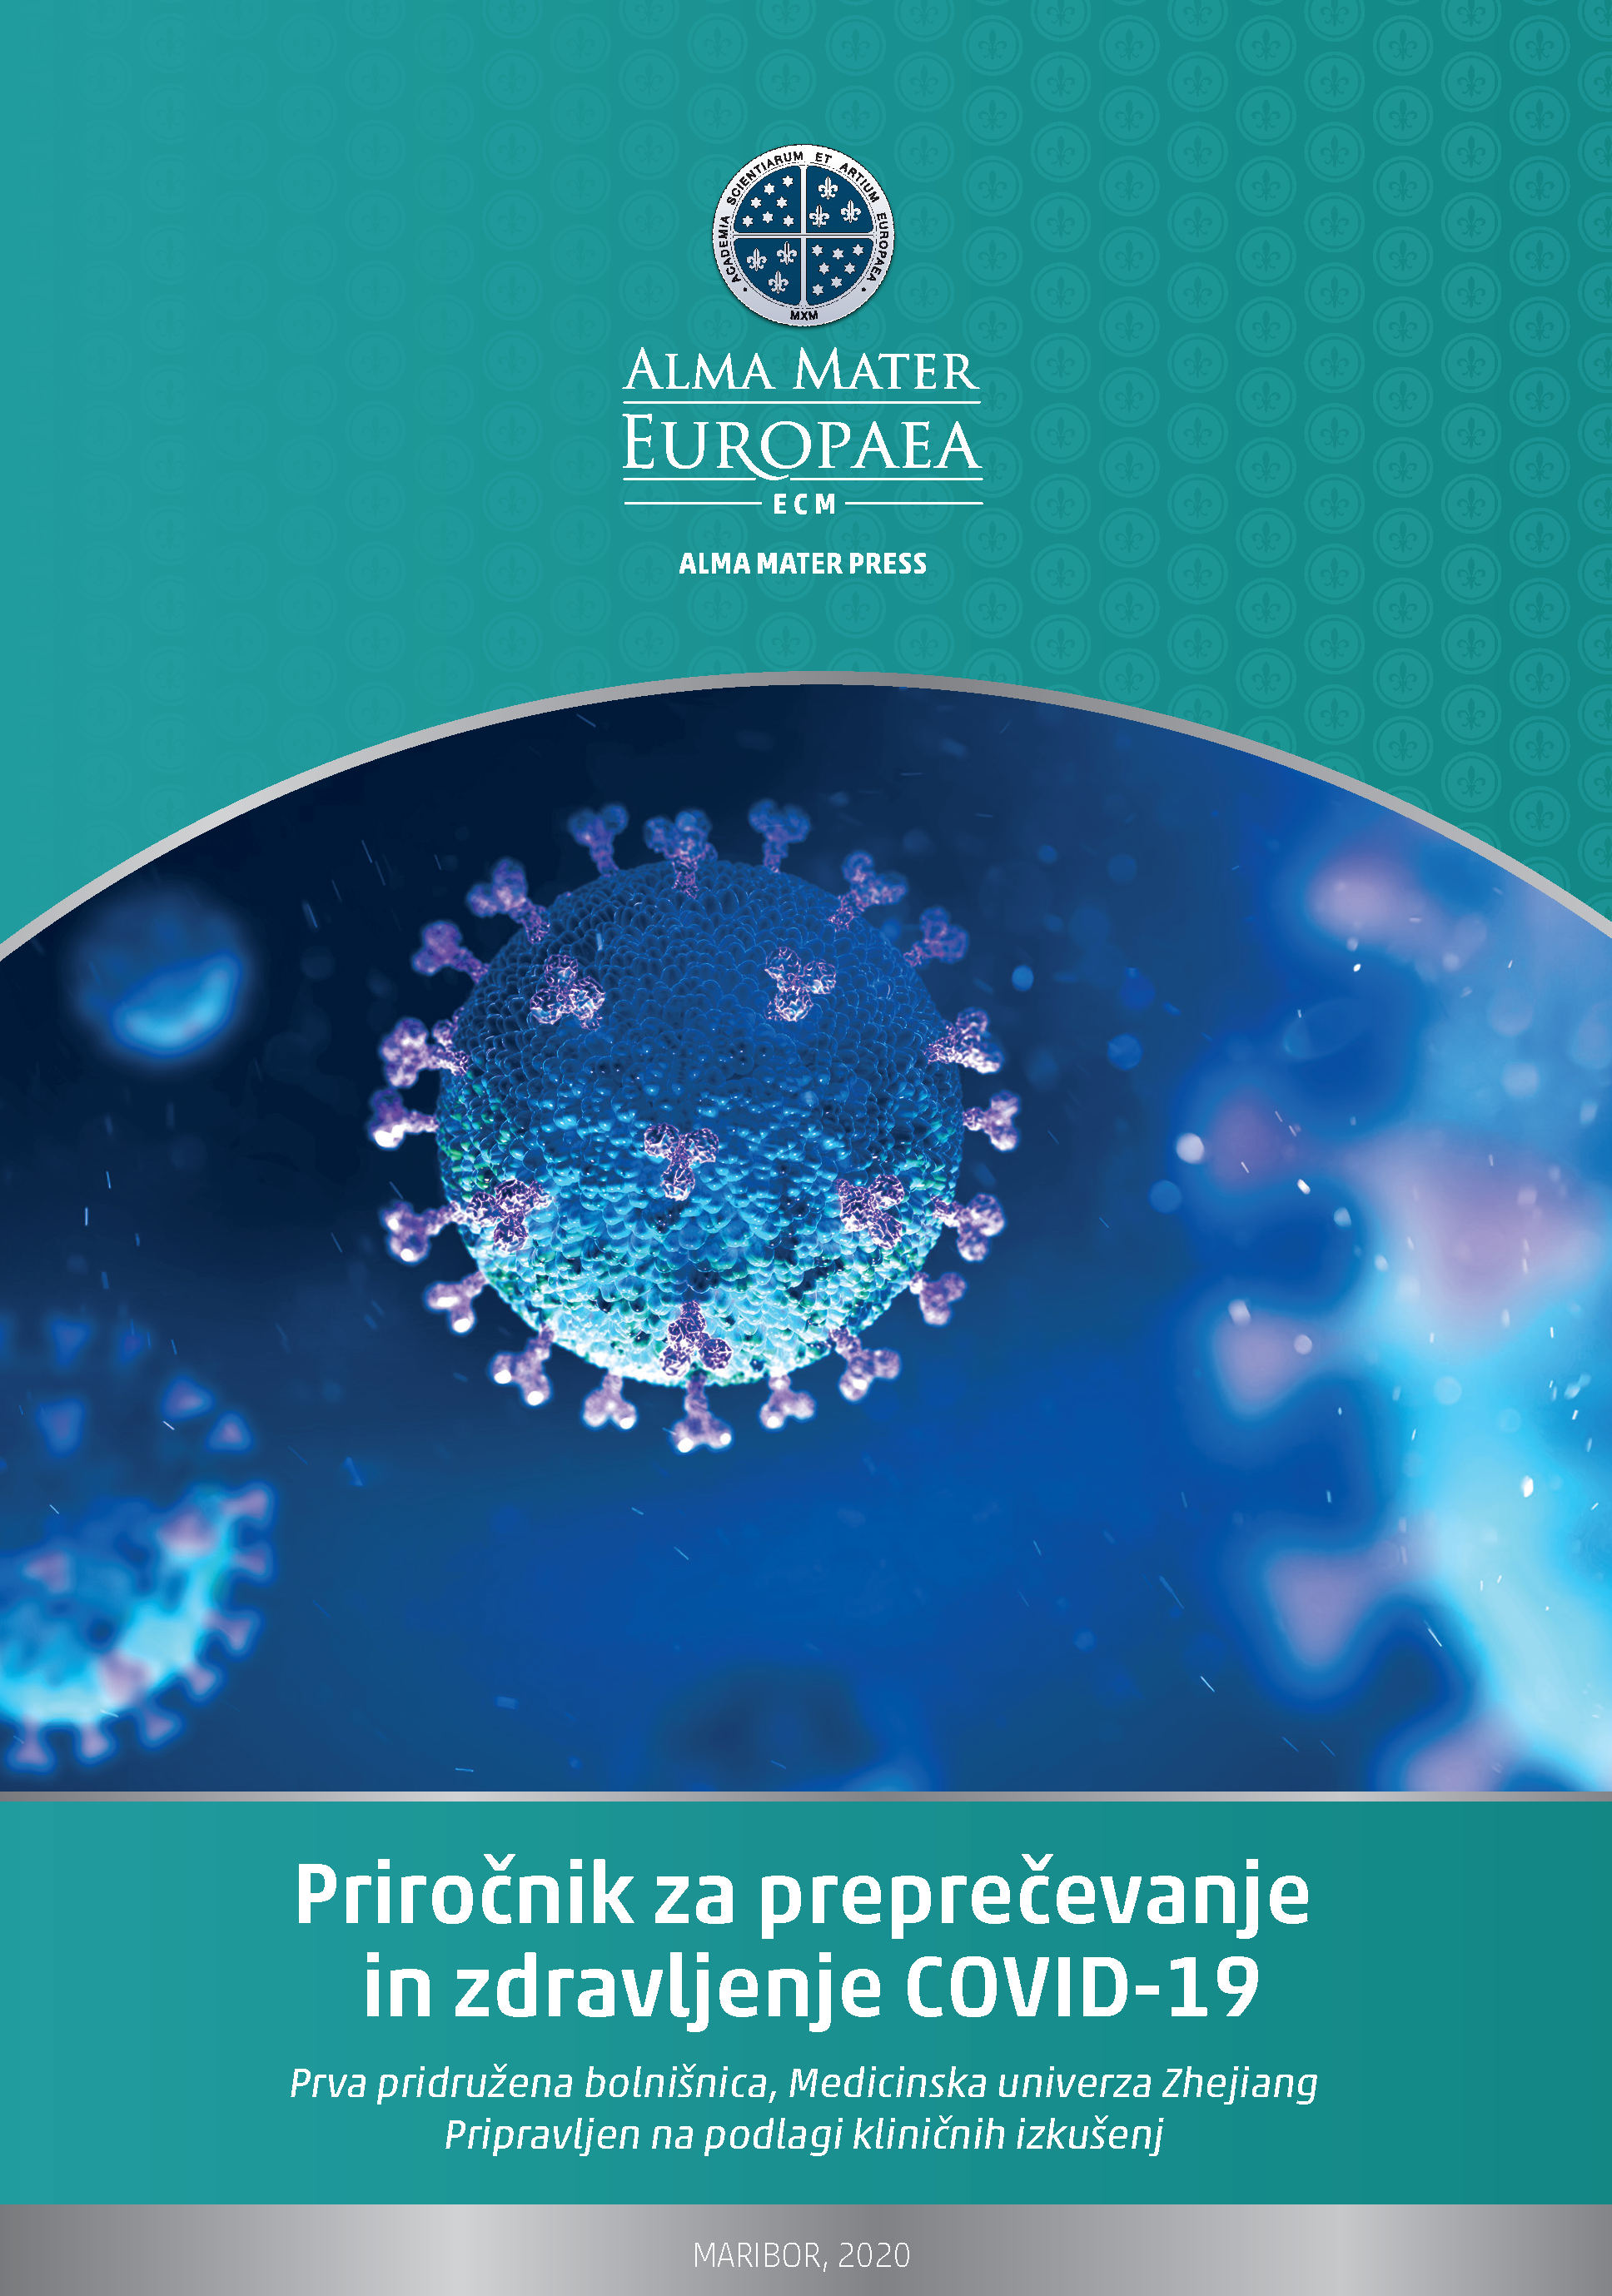 Alma Mater press izdala Priročnik za preprečevanje in zdravljenje COVID-19